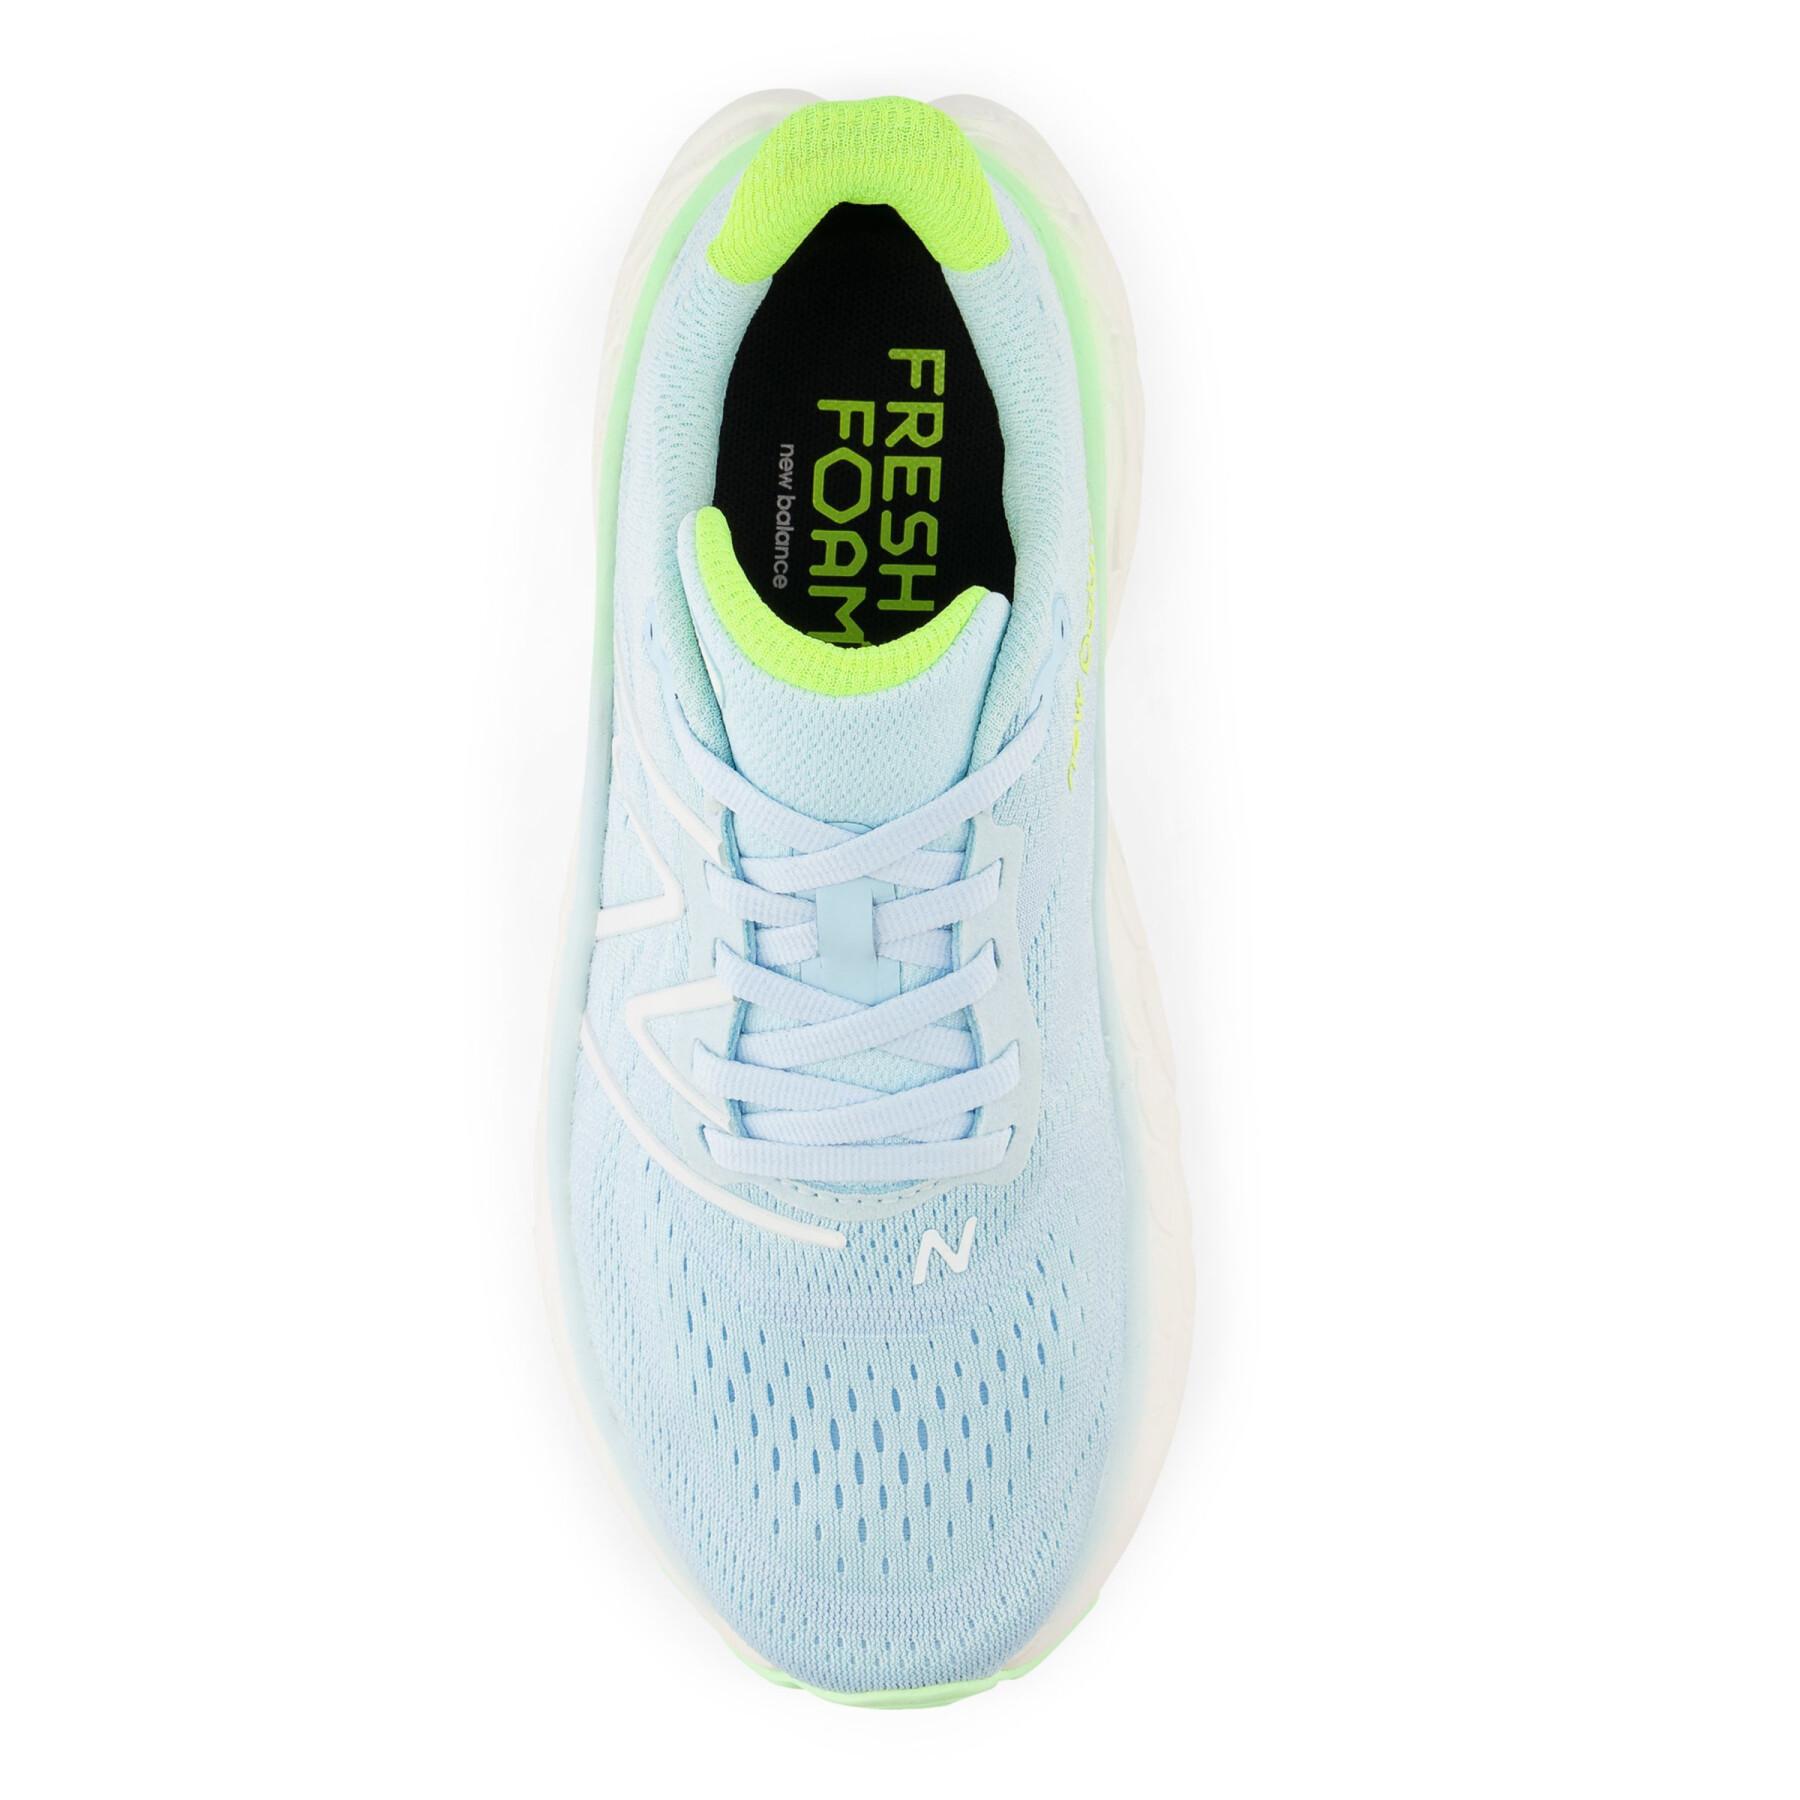 Chaussures de running femme New Balance Fresh Foam X More v4